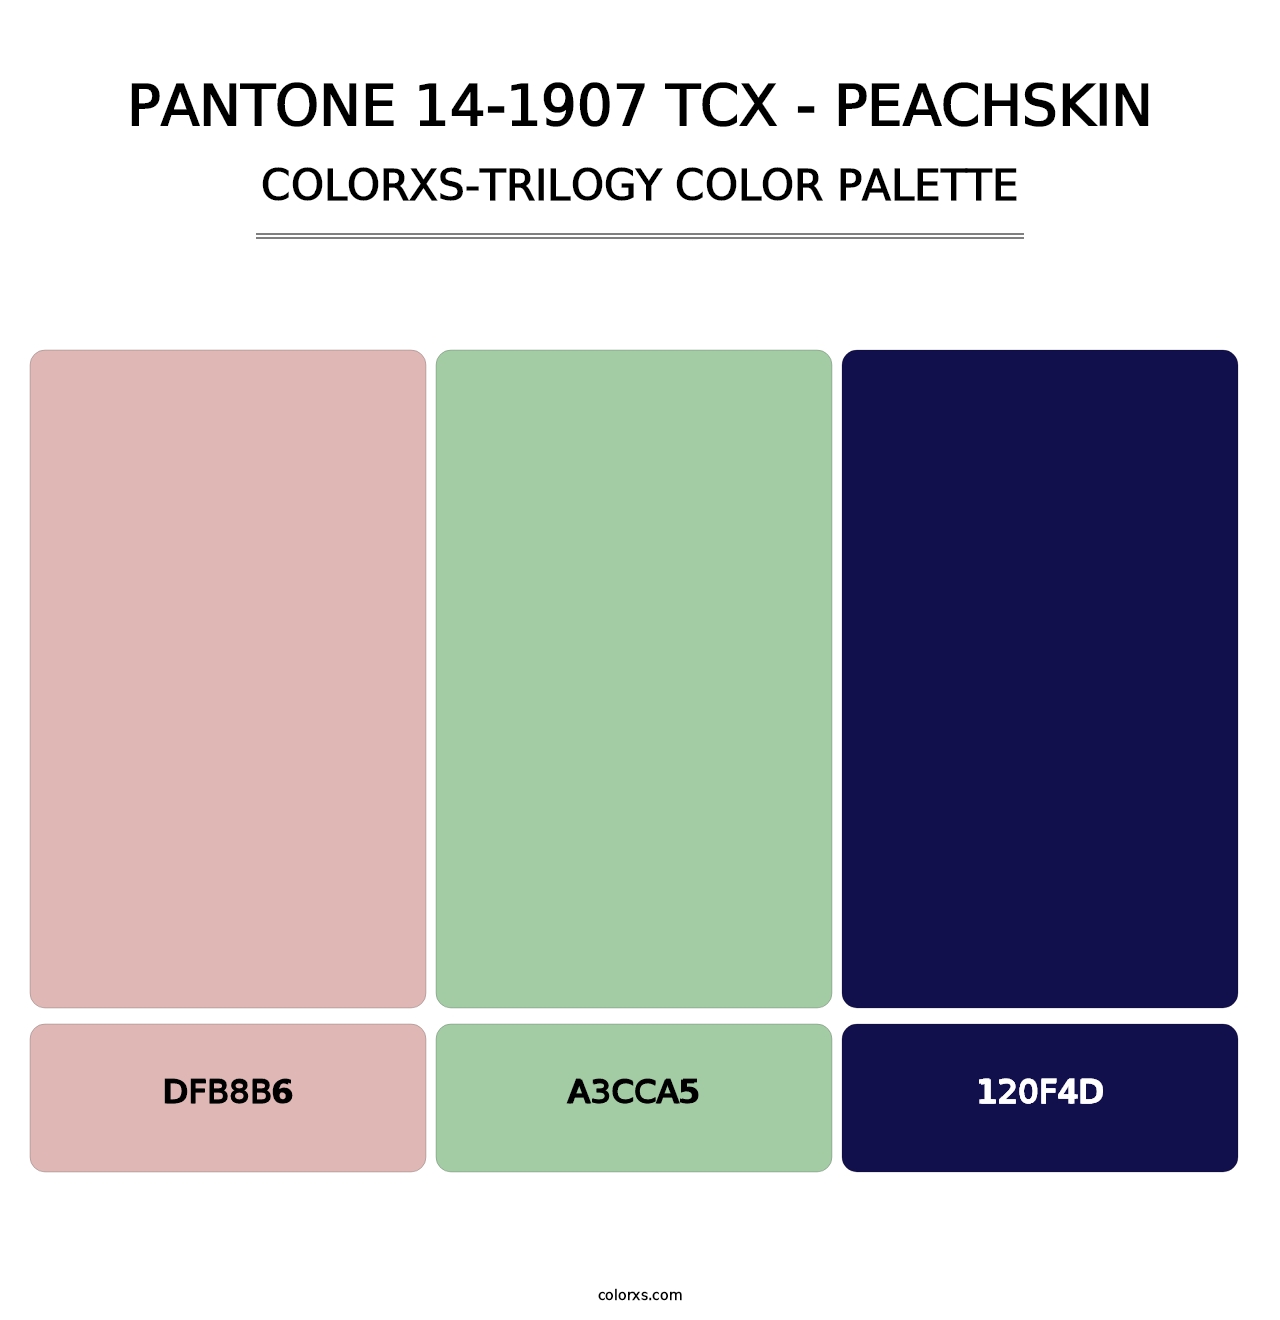 PANTONE 14-1907 TCX - Peachskin - Colorxs Trilogy Palette